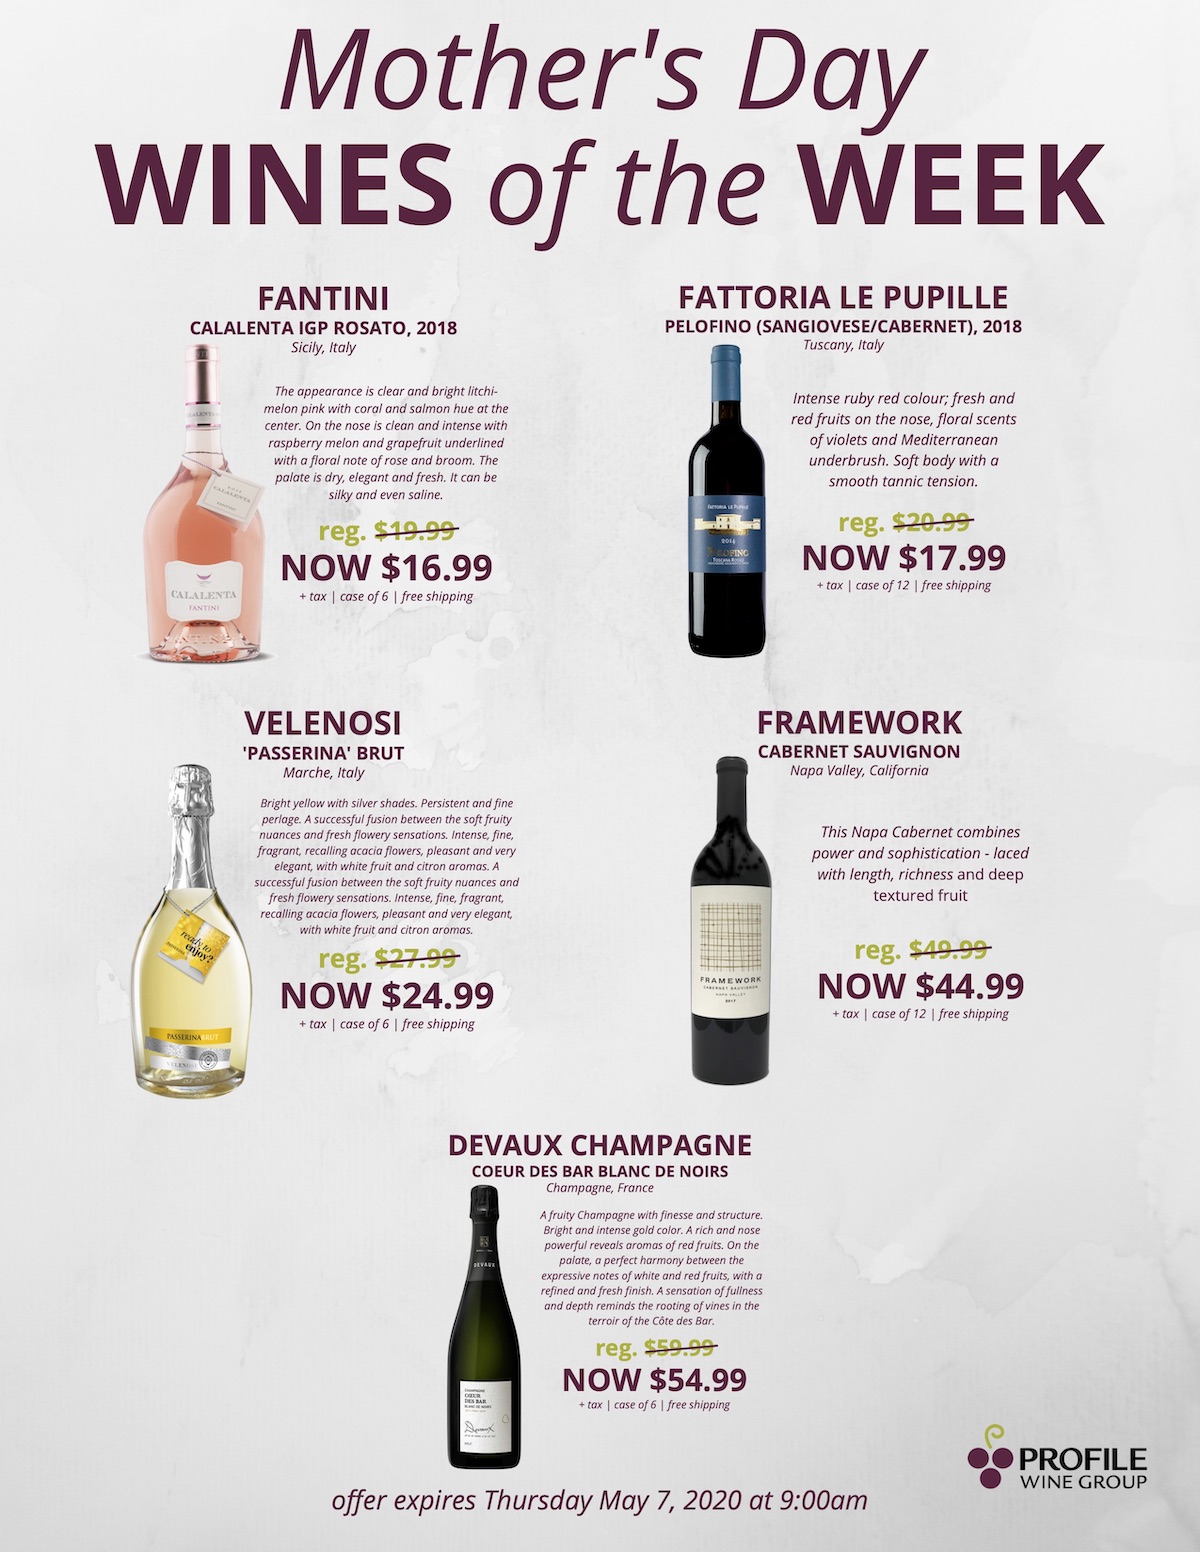 Wines of the Week